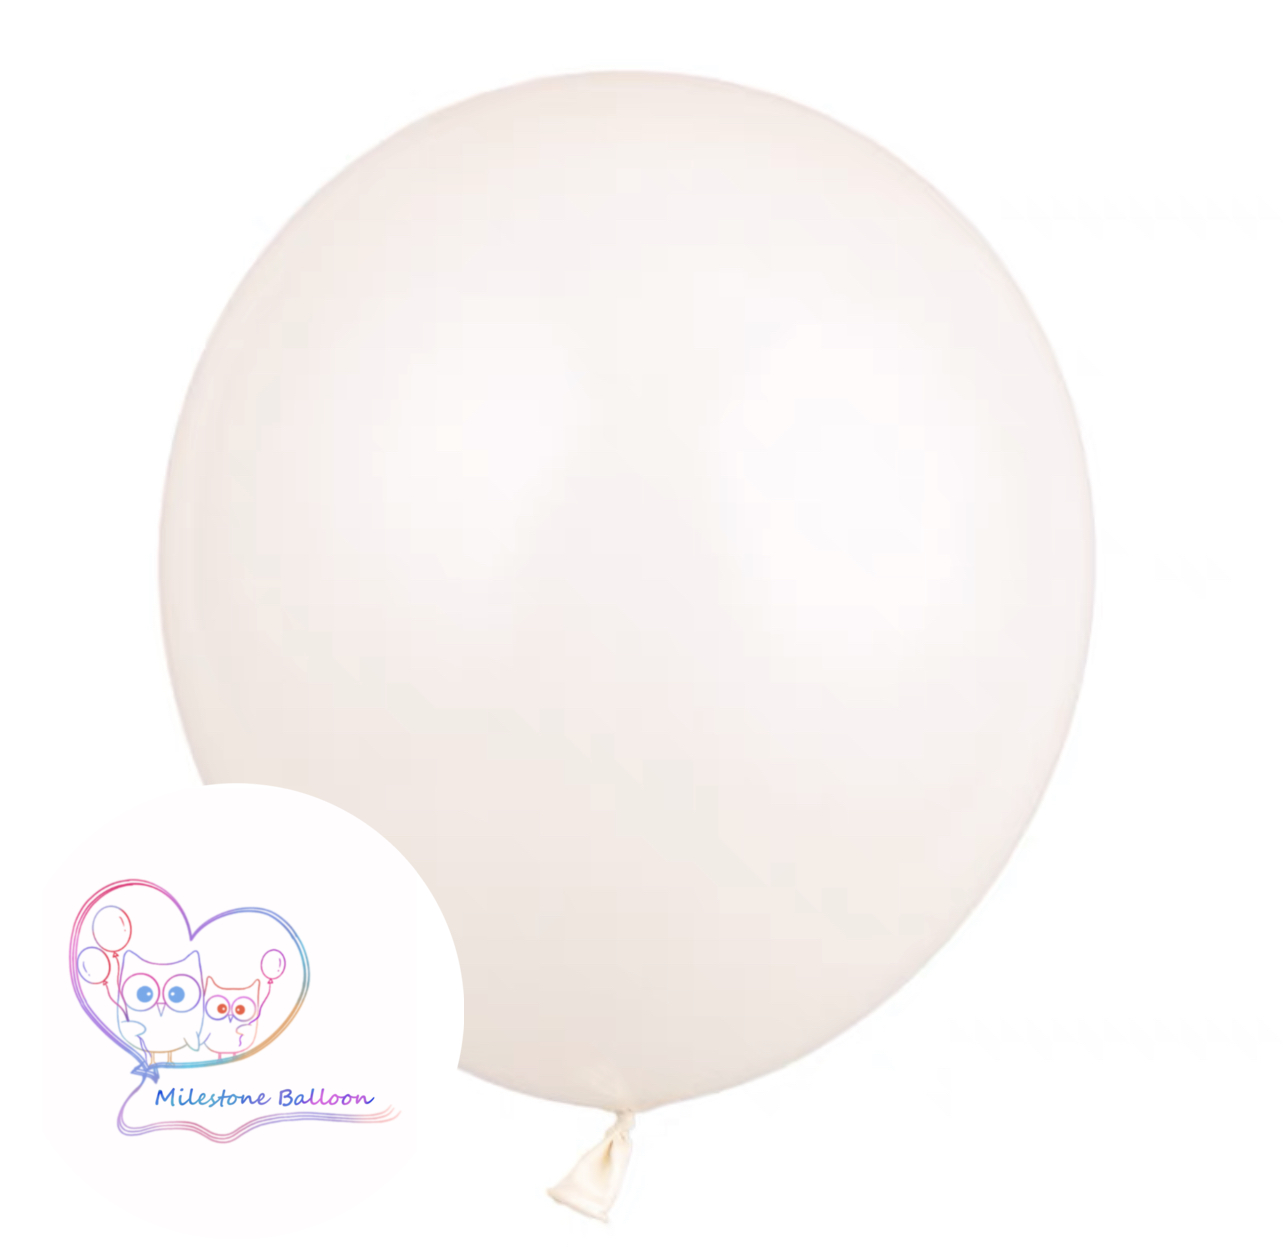 5吋氣球 (白色) (1pc) 5LB15